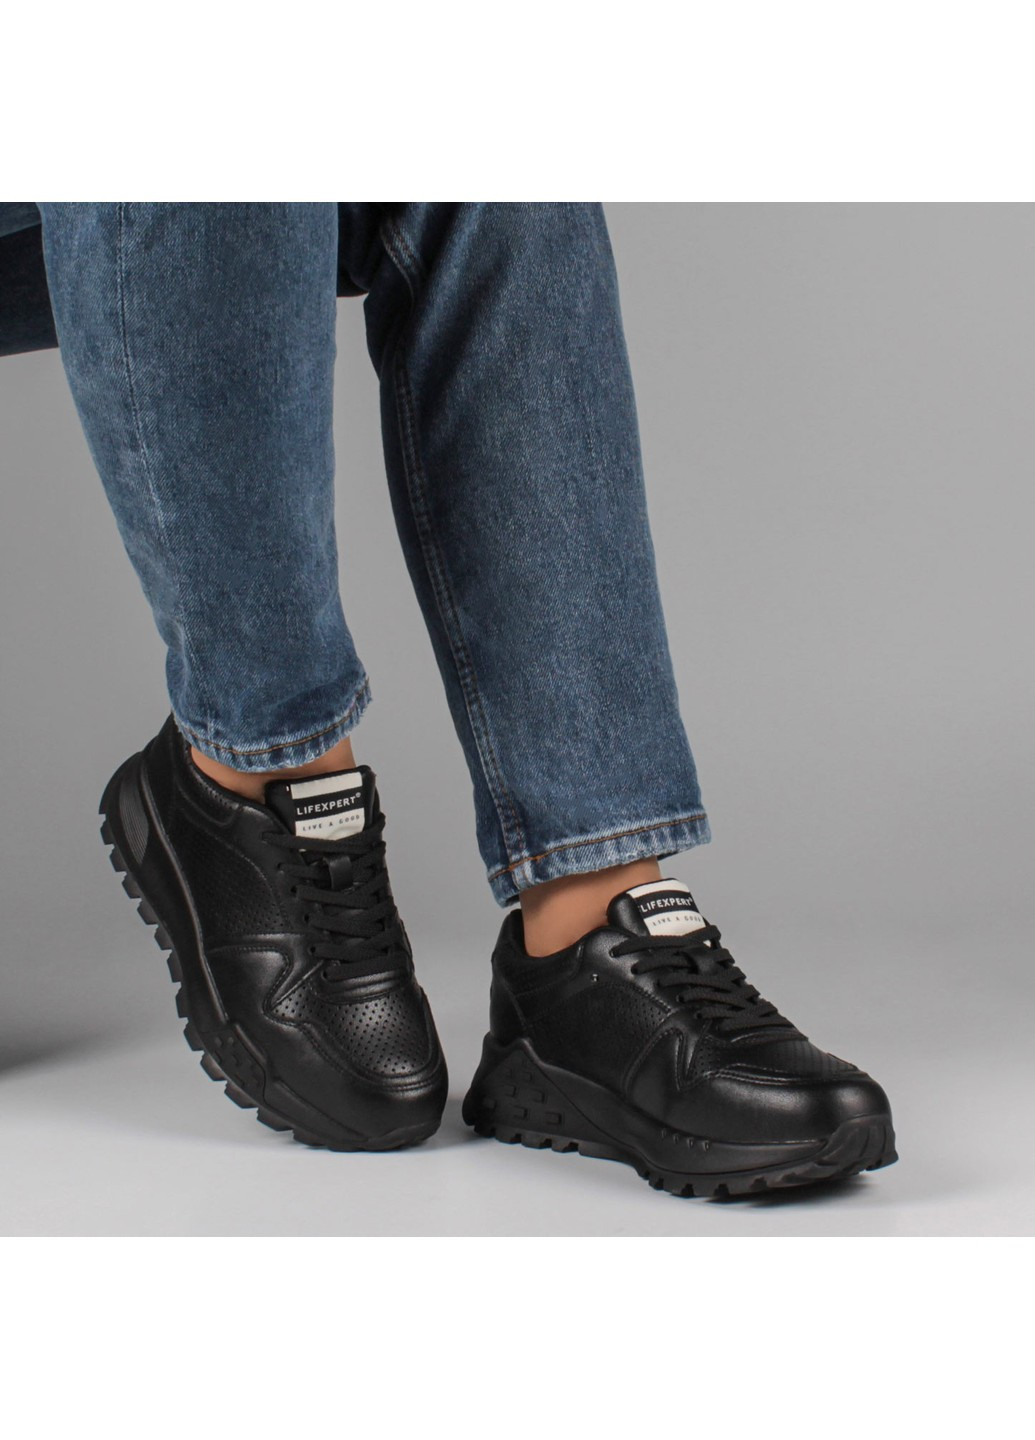 Черные демисезонные женские кроссовки 198872 Lifexpert